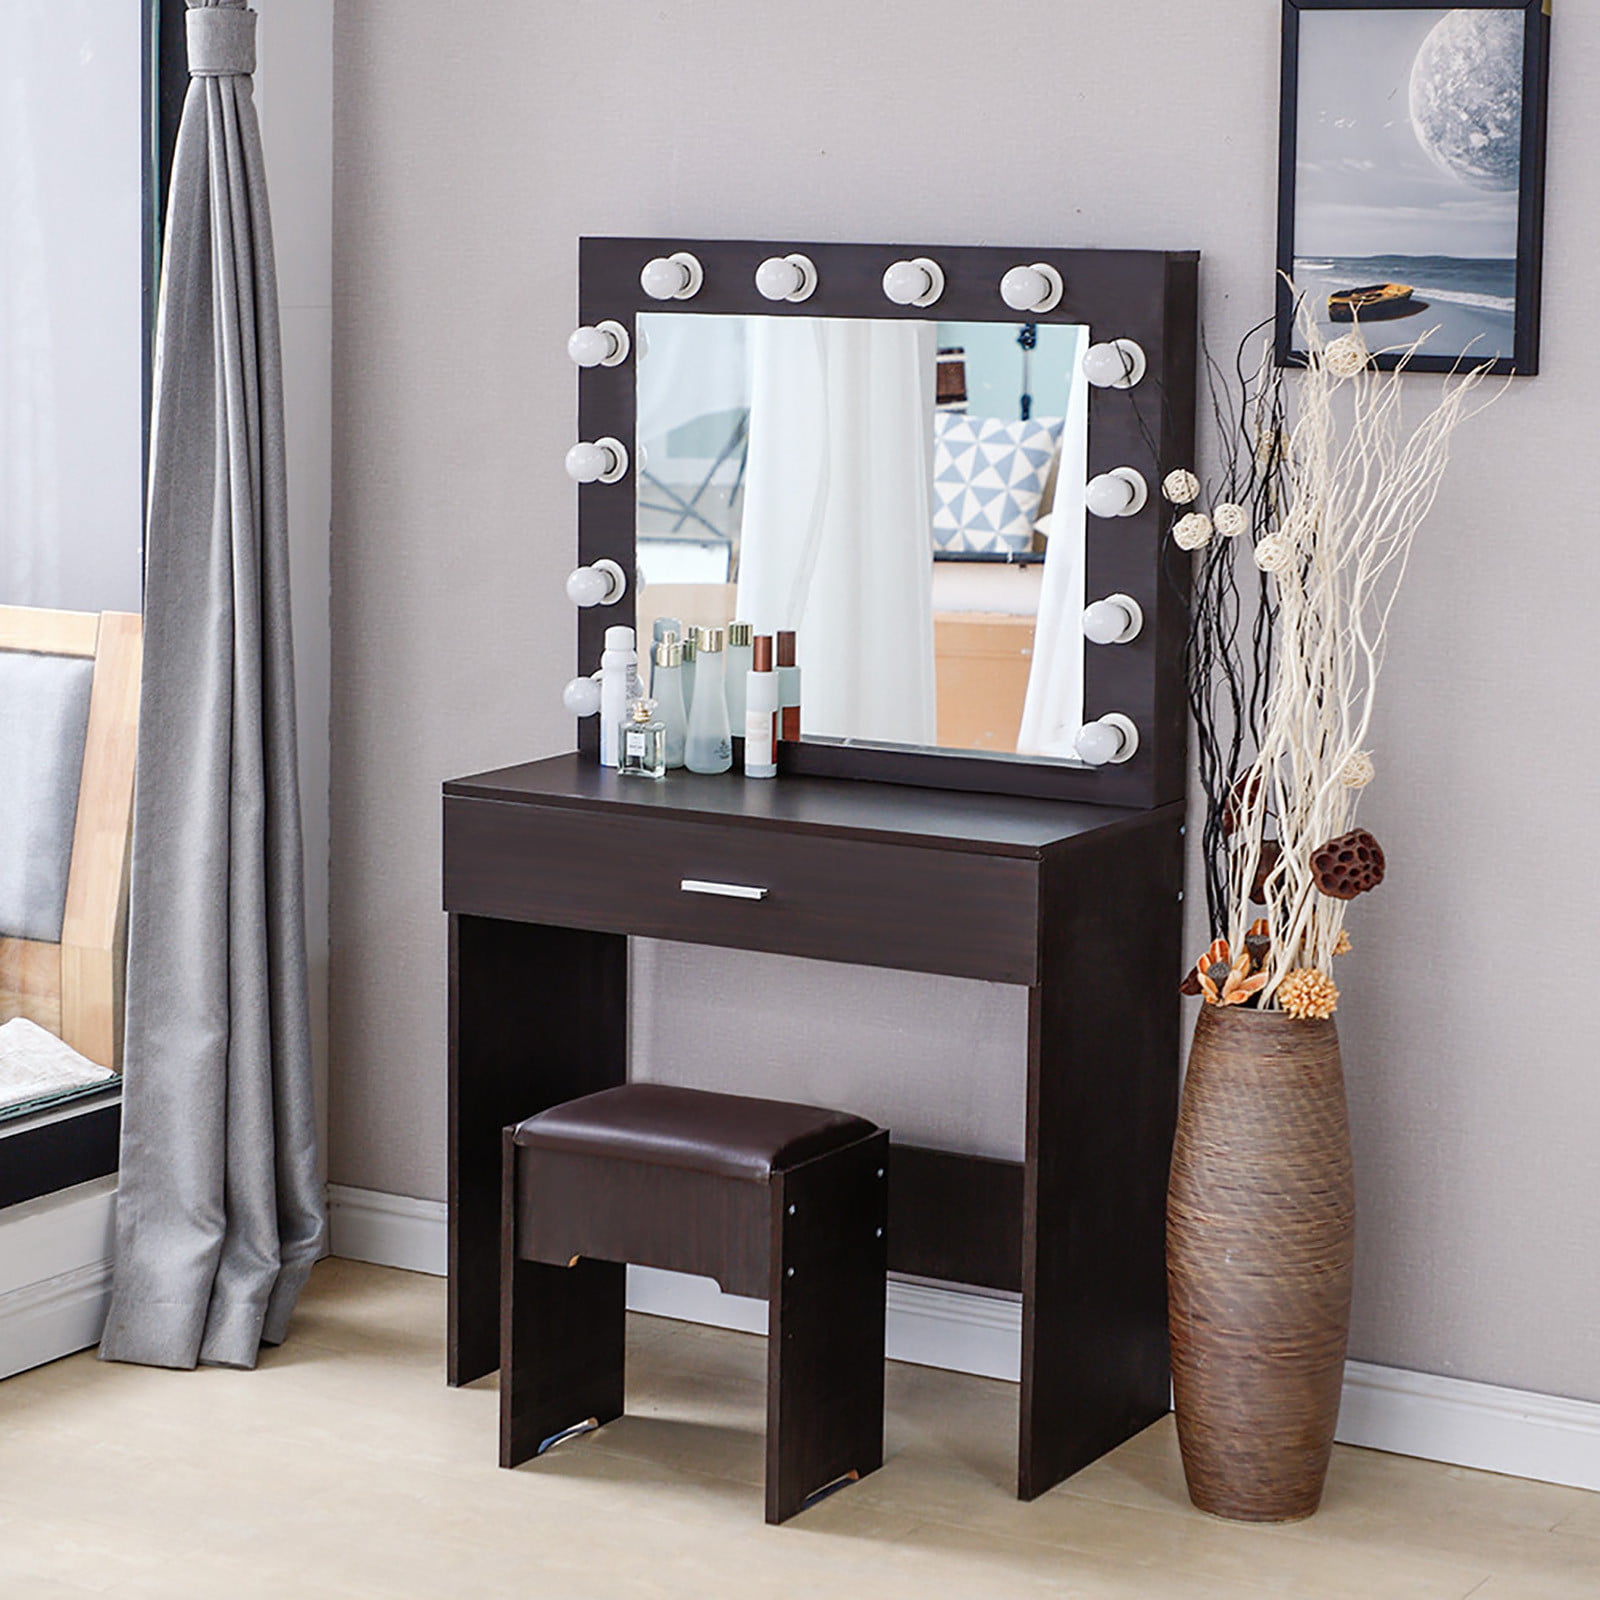 Details about    3 Drawer Dressing Table Black Makeup Desk Wooden Bedroom Furniture 